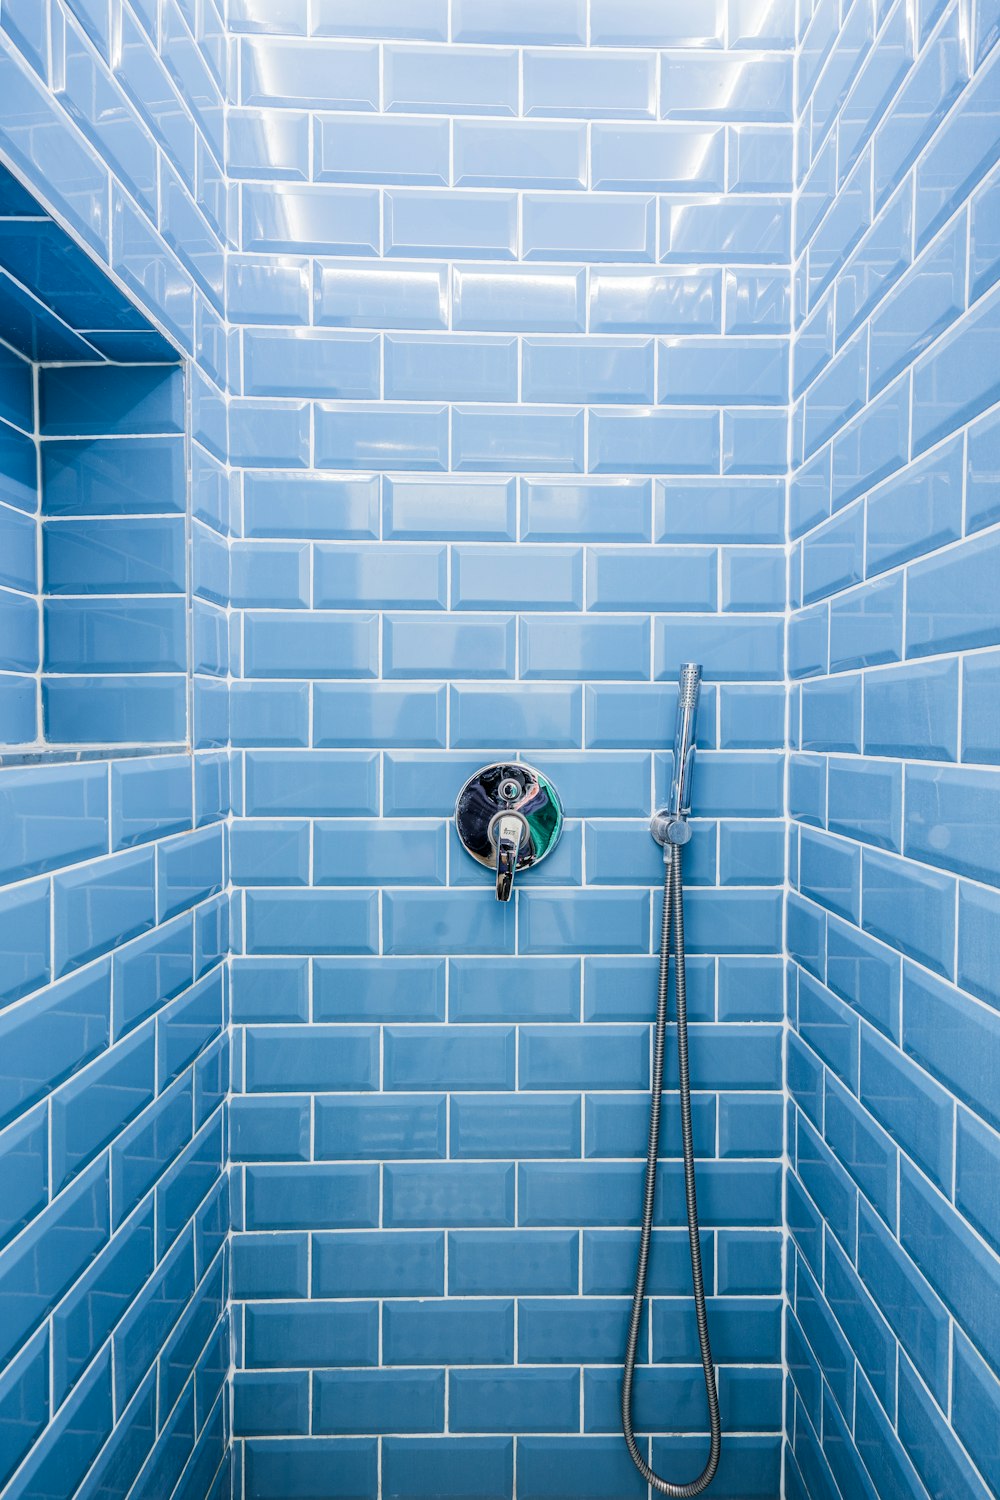 Bathroom Tile Pictures | Download Free Images on Unsplash